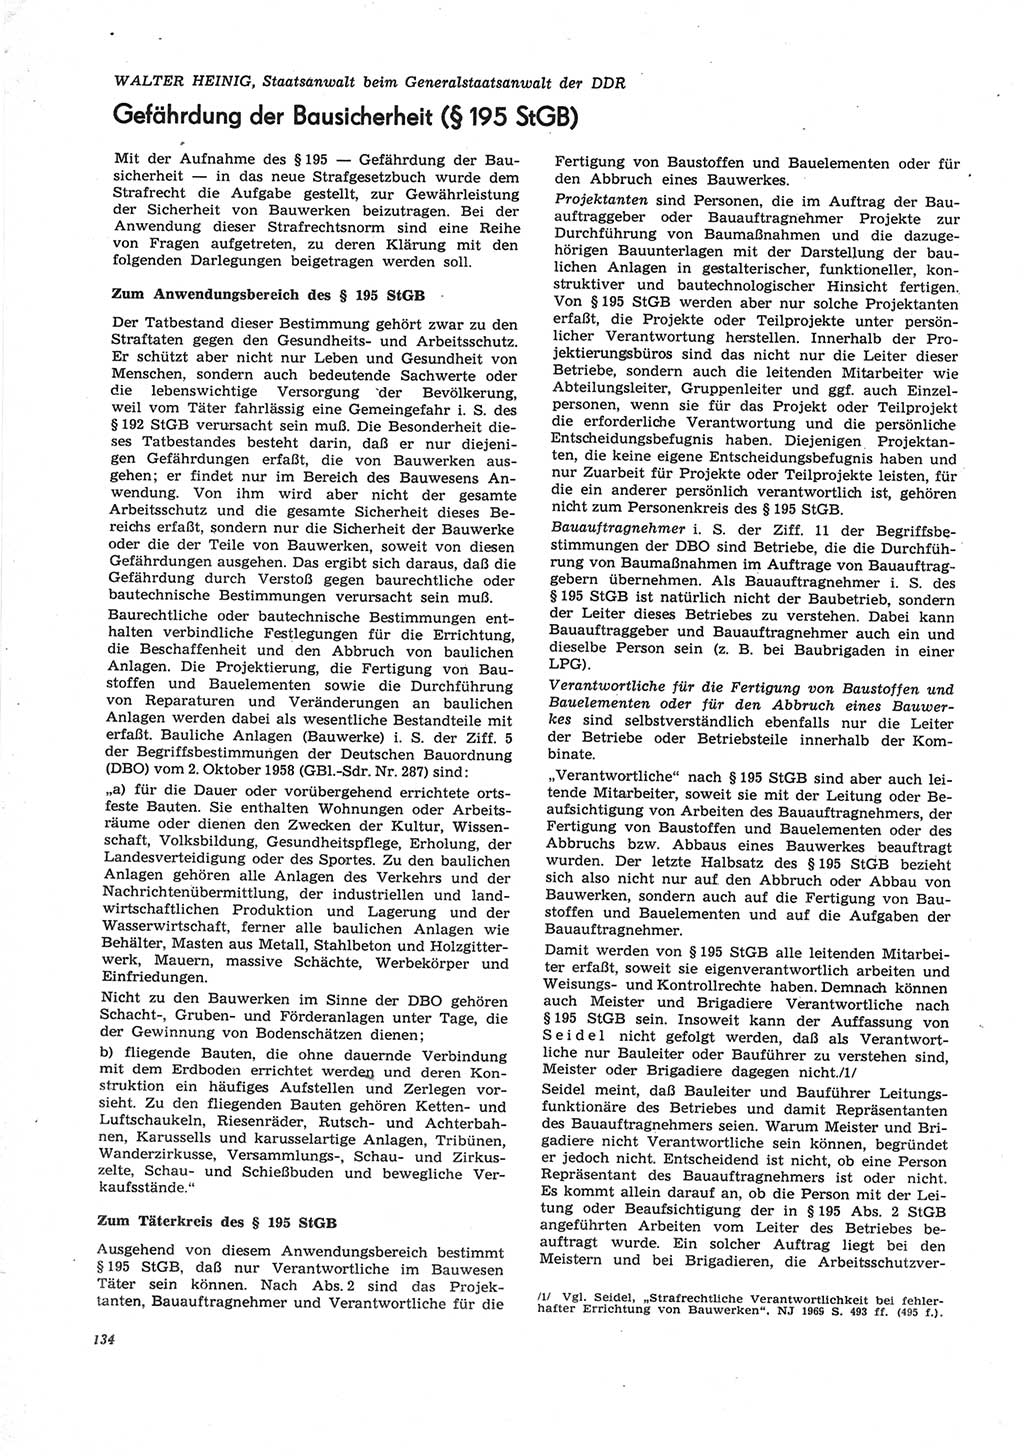 Neue Justiz (NJ), Zeitschrift für Recht und Rechtswissenschaft [Deutsche Demokratische Republik (DDR)], 25. Jahrgang 1971, Seite 134 (NJ DDR 1971, S. 134)